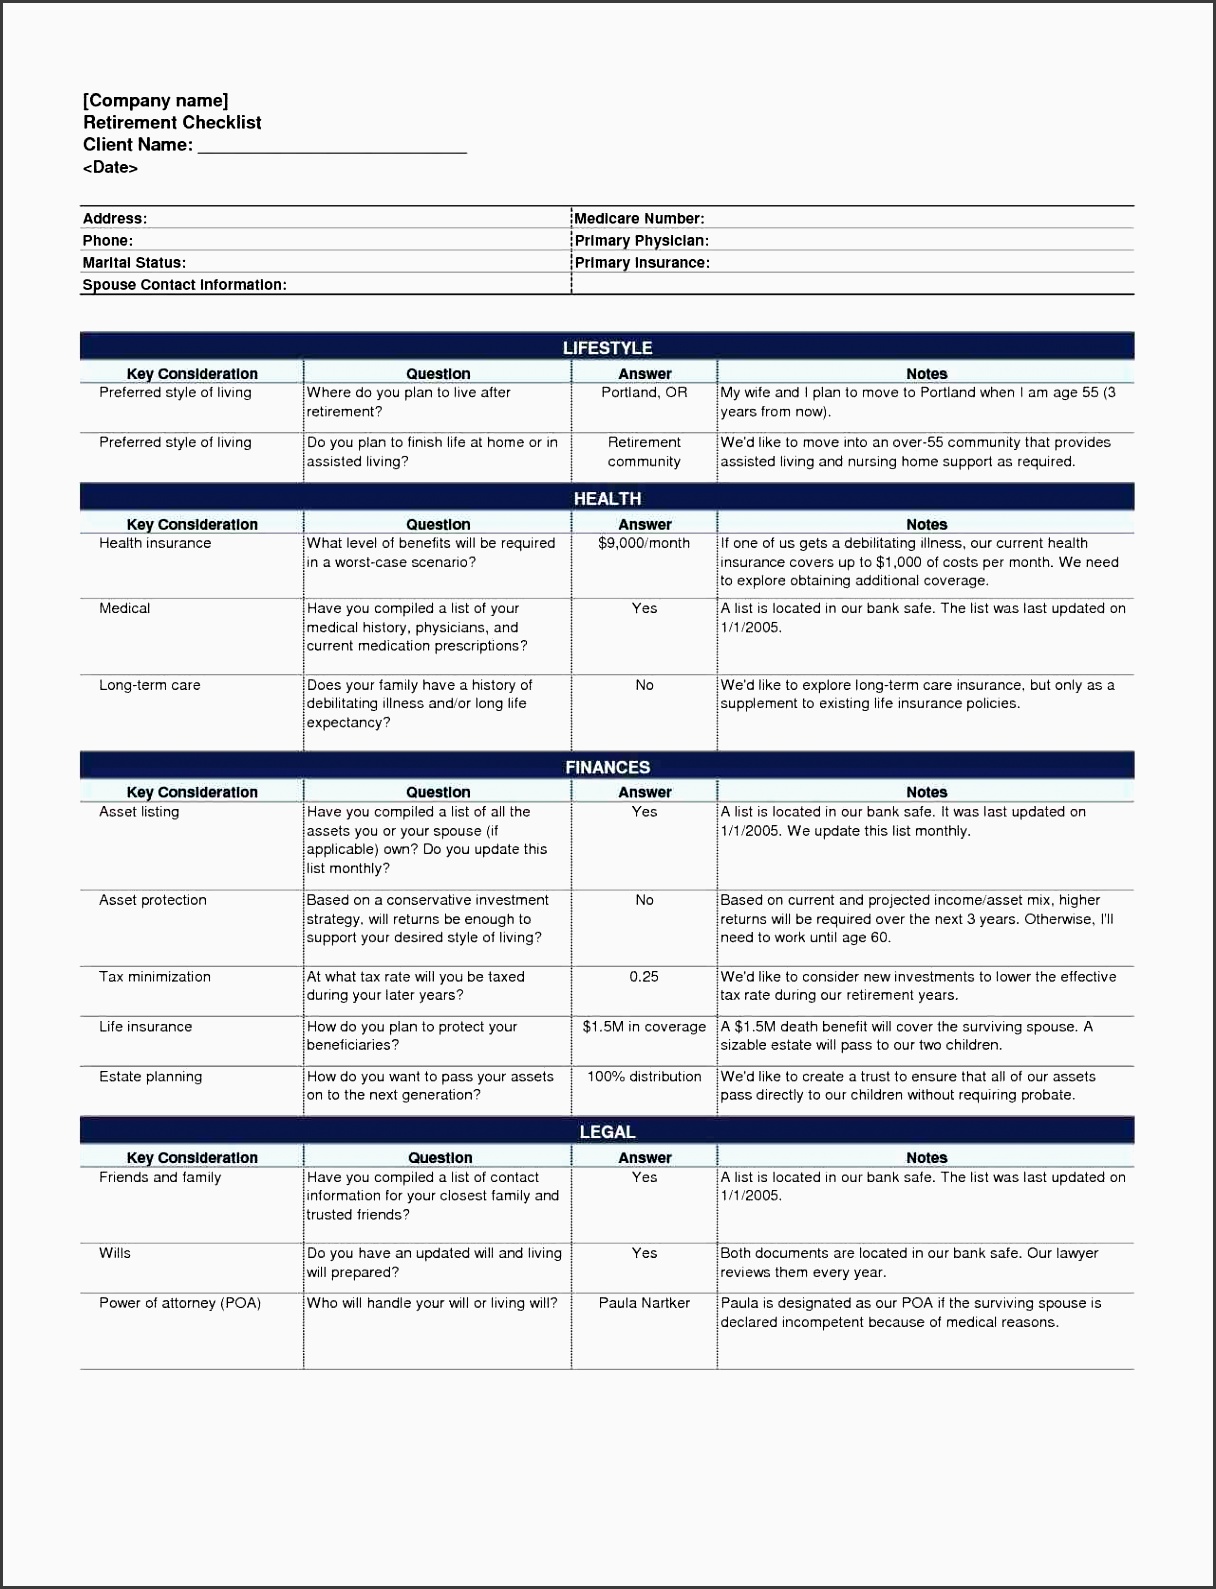 checklist event planning checklist template event planning checklist template event planning checklist template event planning checklist